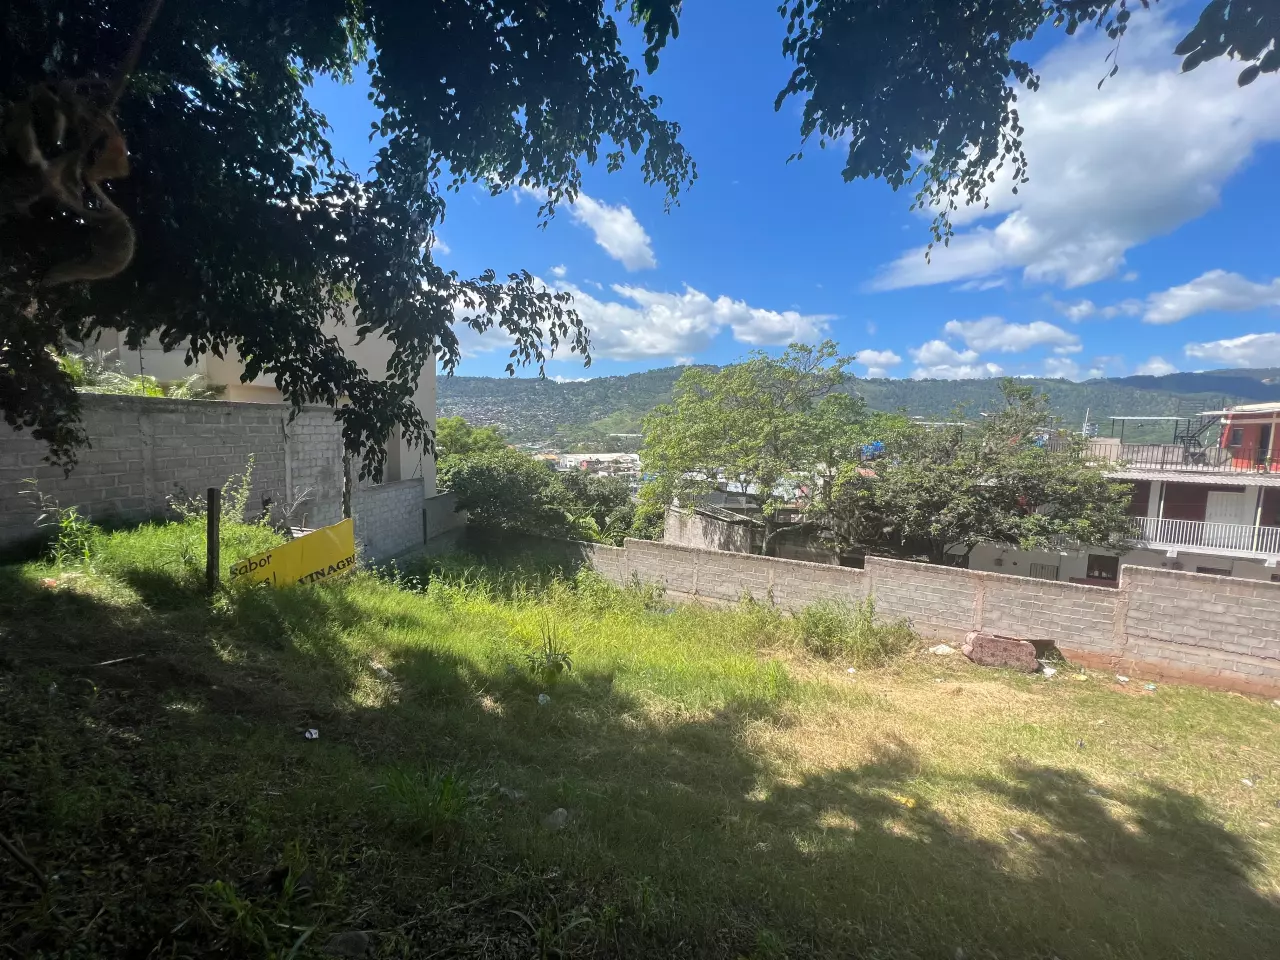 Terrenos para inversion ubicados en tegucigalpa con vista en la residencial las cumbres